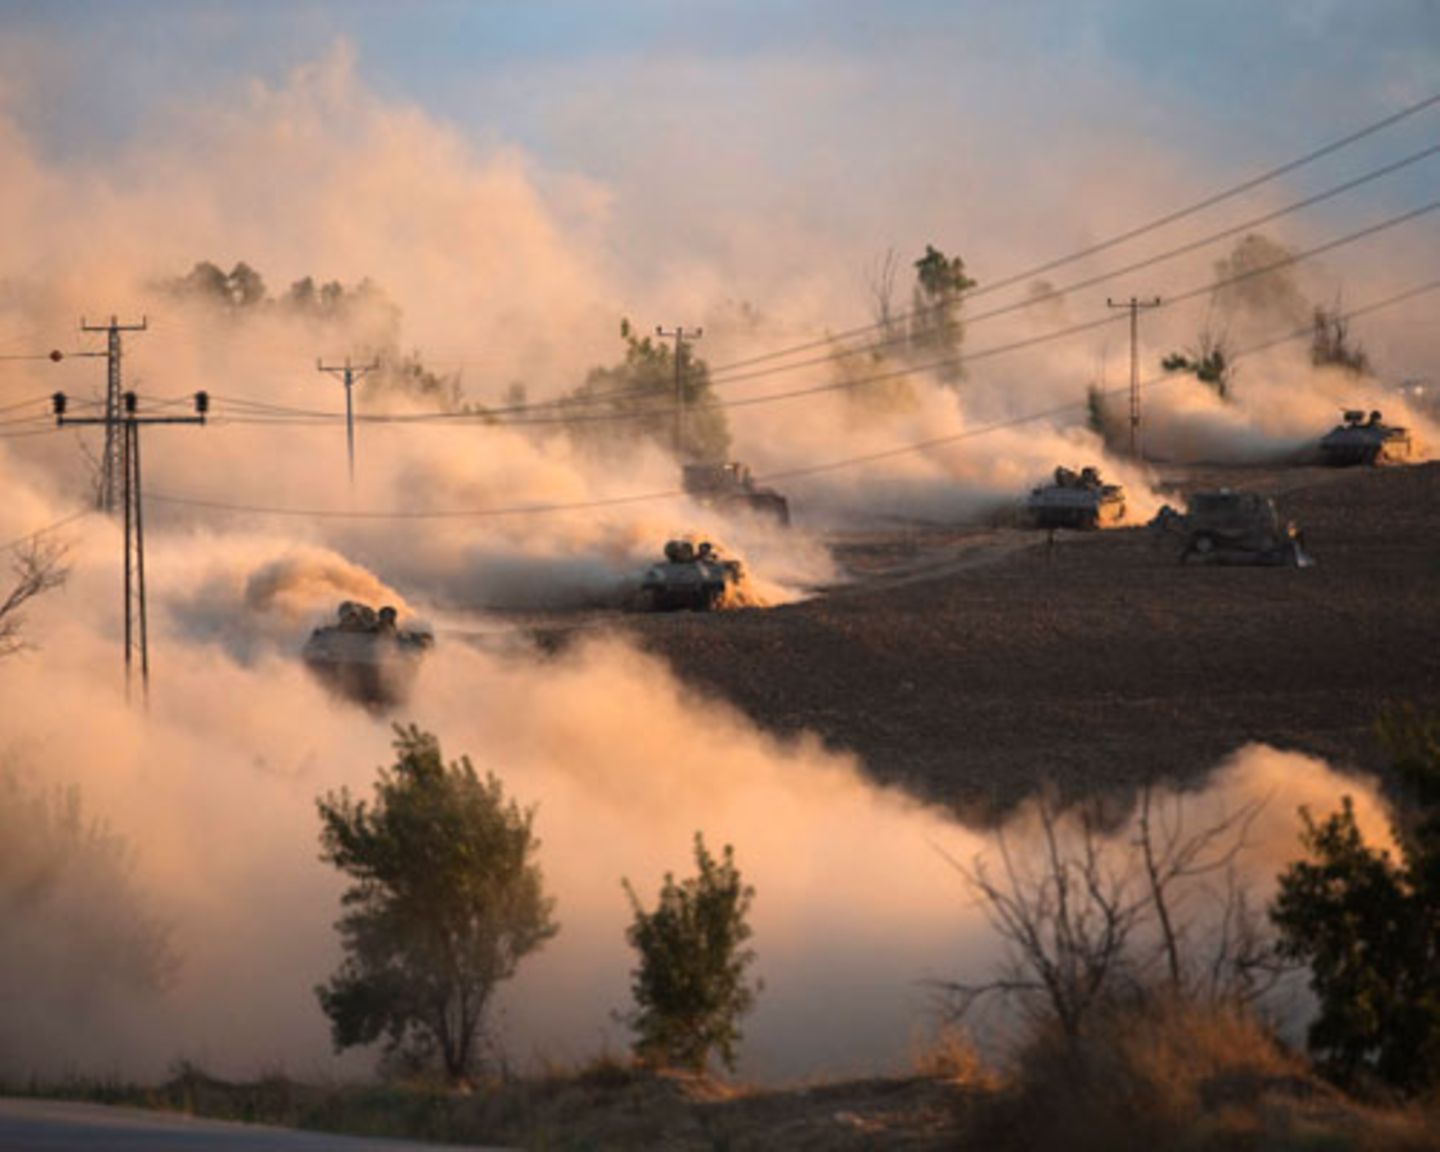 Israelische Panzer nehmen Kurs auf Gaza. Nach dem zehntägigen Beschuss aus der Luft ließ Israel seine Bodentruppen in den Gaza-Streifen einmarschieren, wo rund zwei Millionen Menschen leben. Die Soldaten sollen vor allem Tunnel zerstören, durch die Hamas-Kämpfer nach Israel gelangen. Aber ihre Waffen treffen auch sehr viele Unbeteiligte.